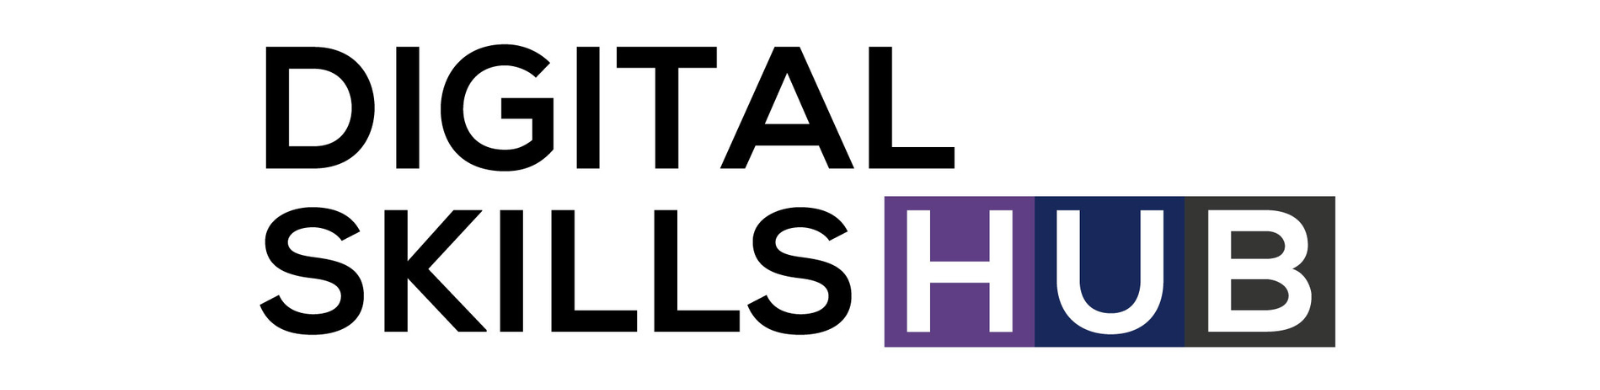 Digital Skills Hub logo 